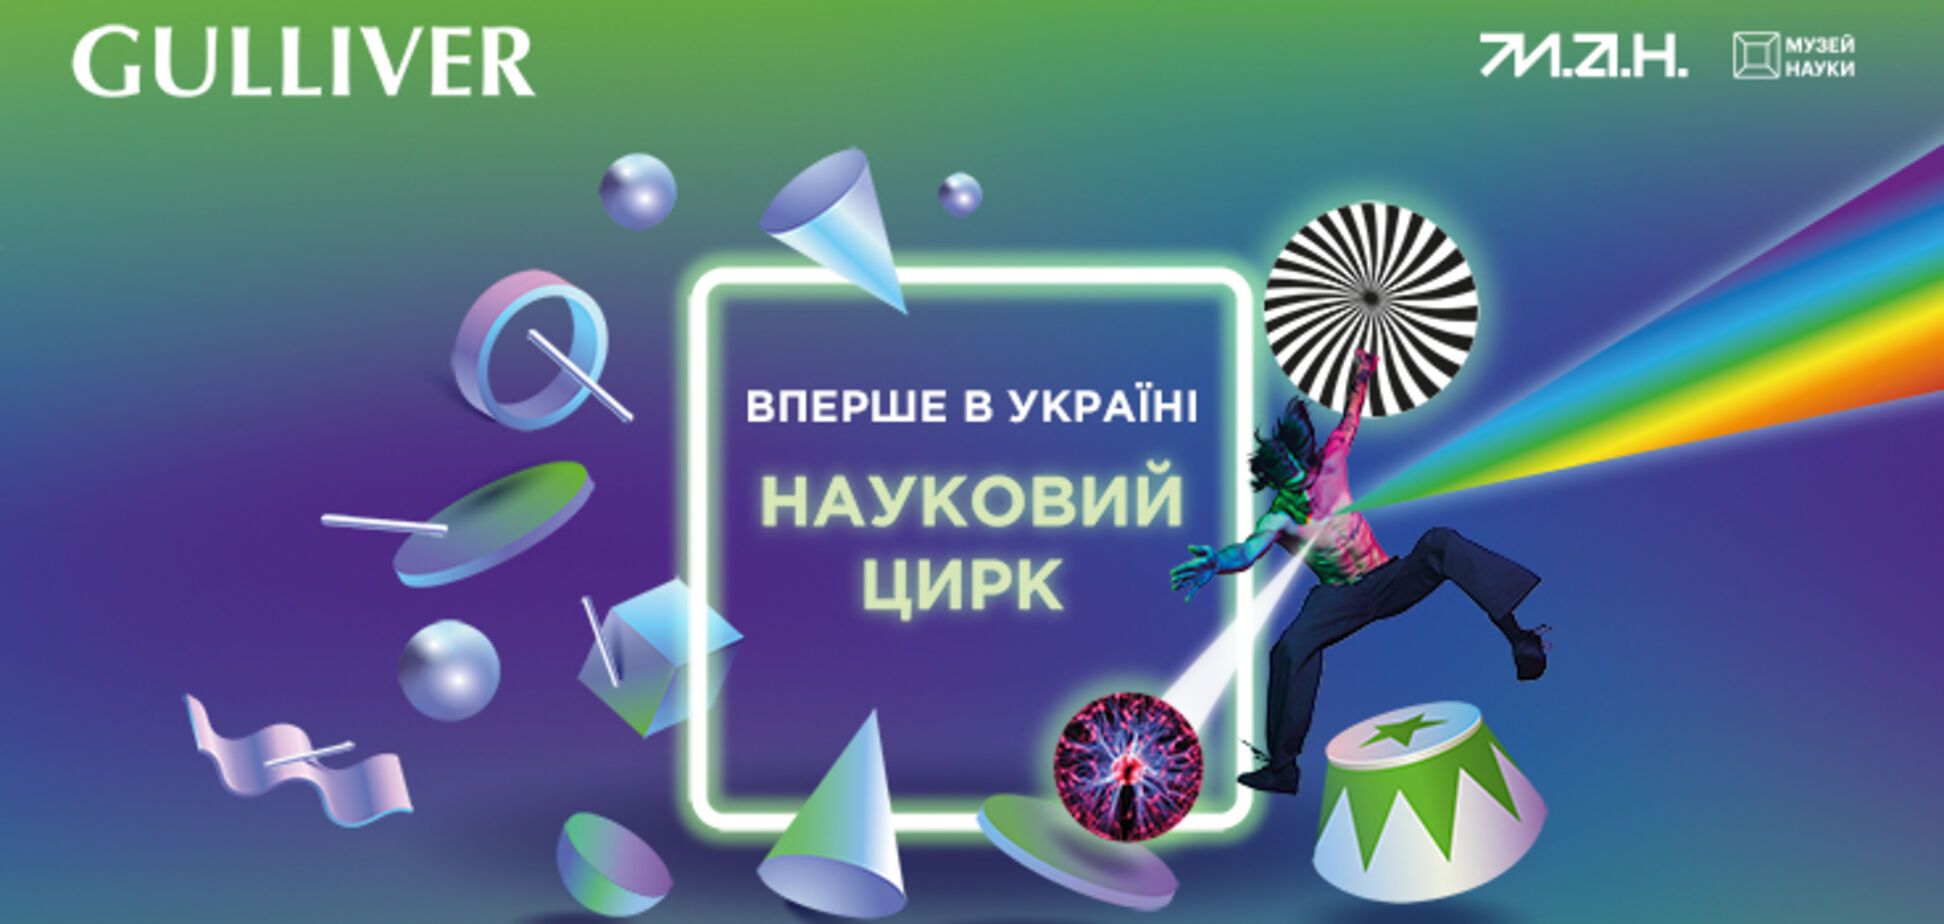 Музей науки МАН та ТРЦ Gulliver відкриють перший в Україні науковий цирк